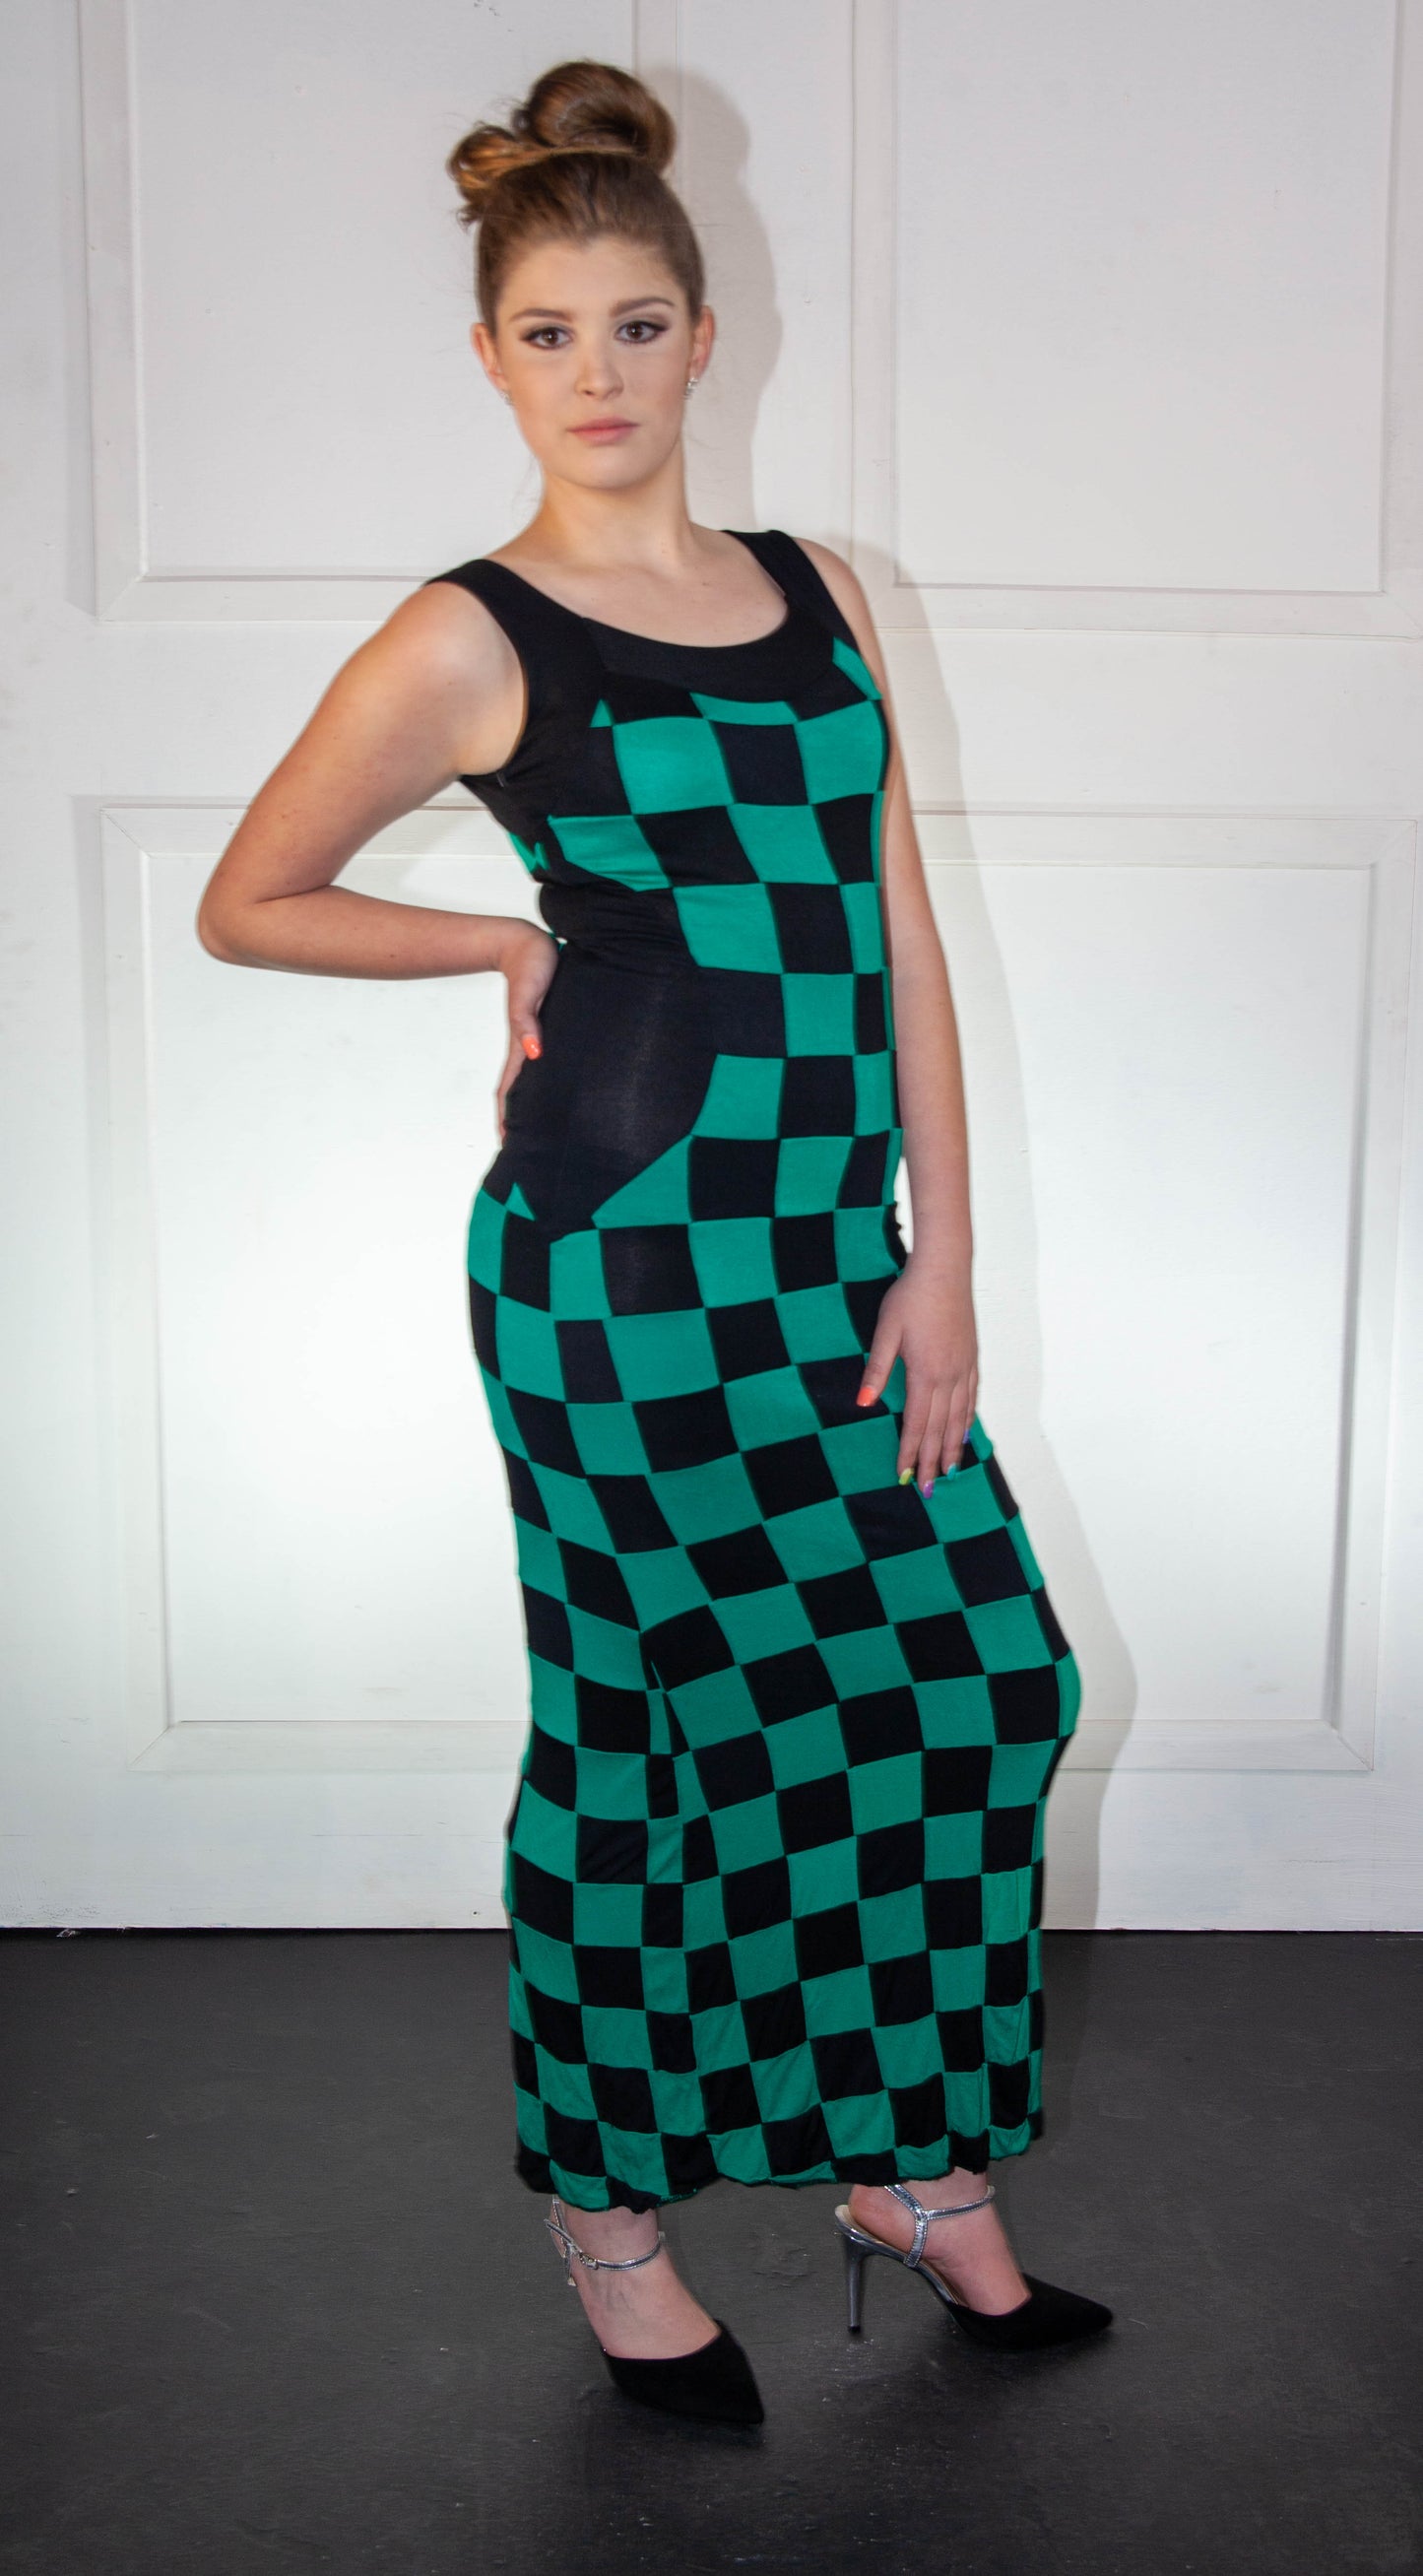 Summer Dress - Checkered Green & Black